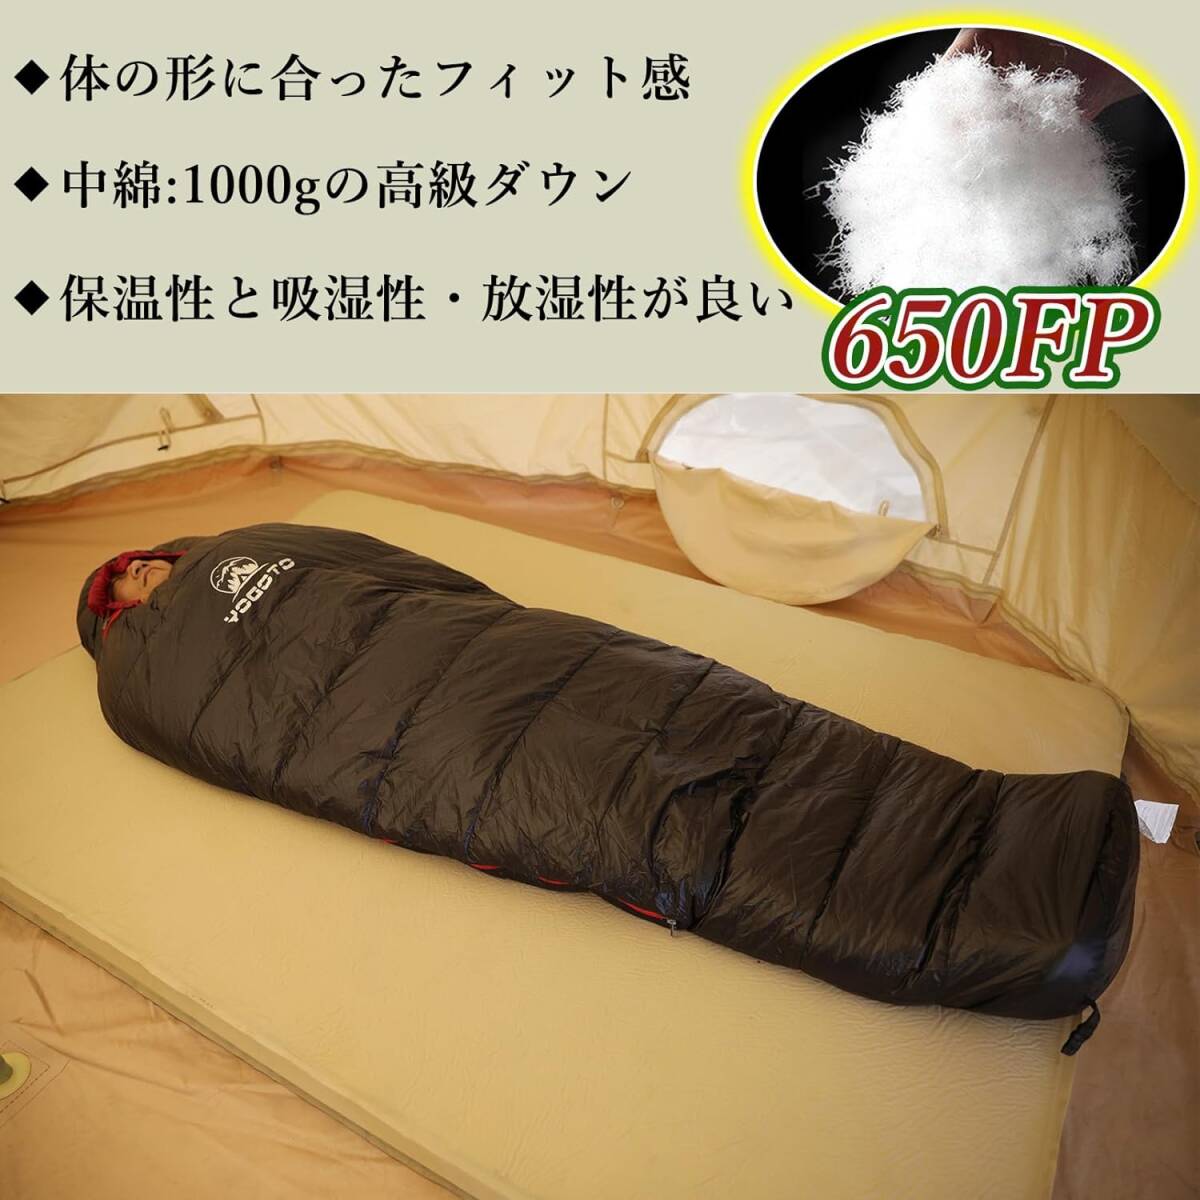 寝袋 シュラフ ダウン 冬用 650FP マミー型 登山 スリーピングバック 防災 撥水 最低使用温度 -15度 ブラック